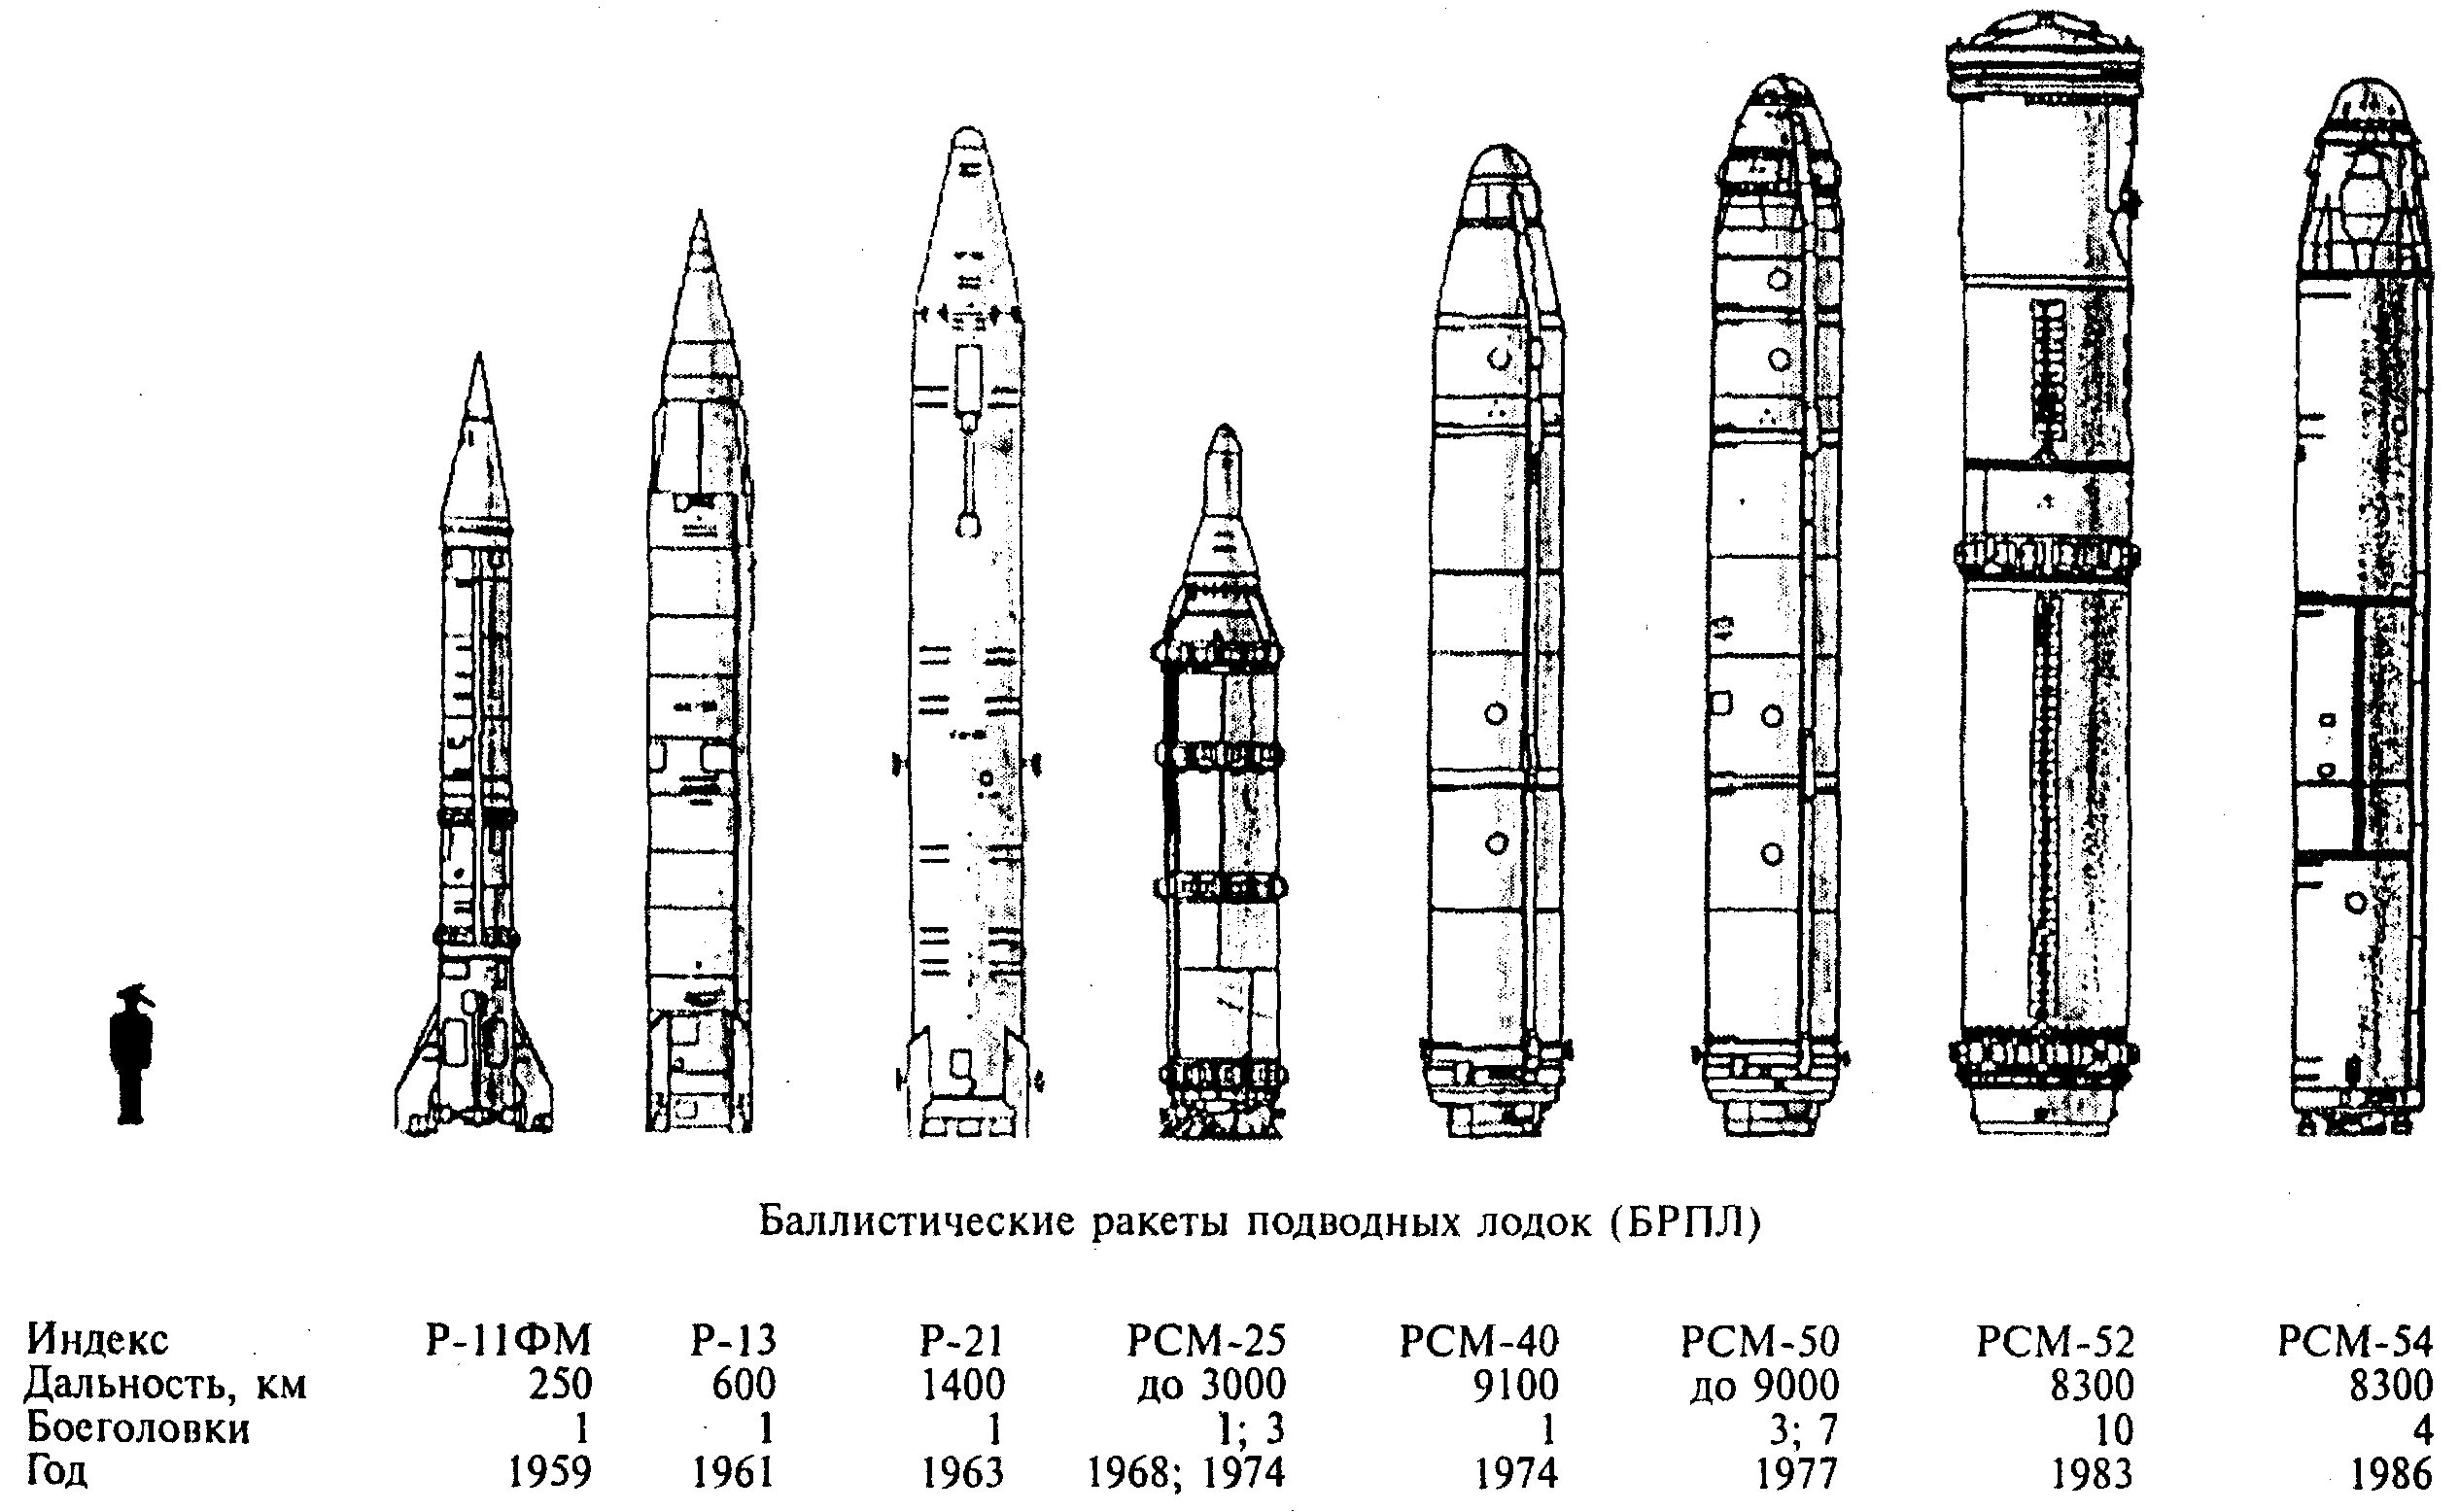 Межконтинентальные баллистические ракеты